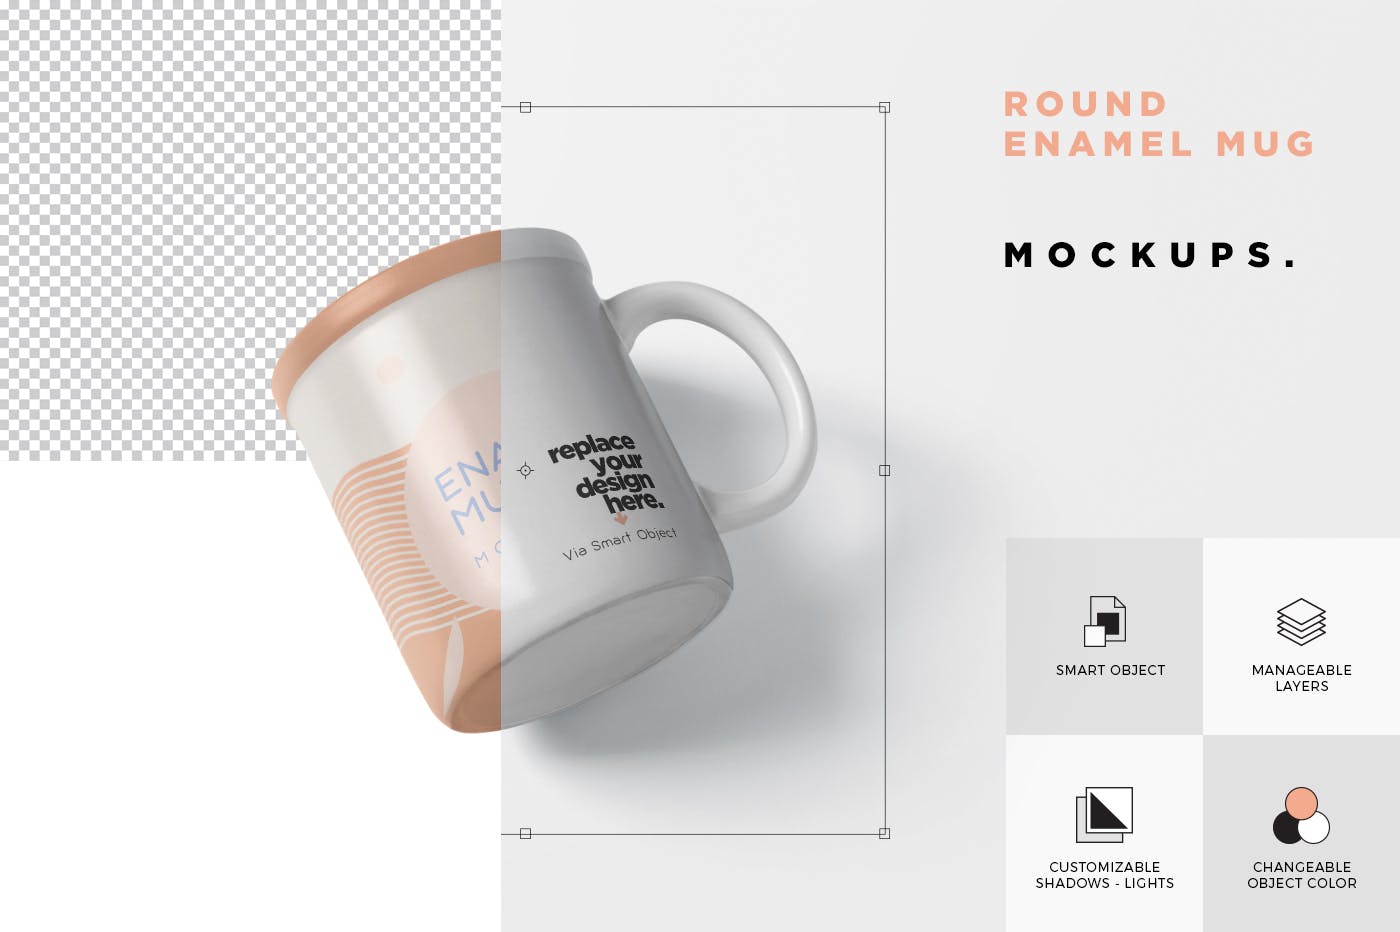 带把手圆形搪瓷杯马克杯图案设计素材中国精选 Round Enamel Mug Mockup With Handle插图(5)